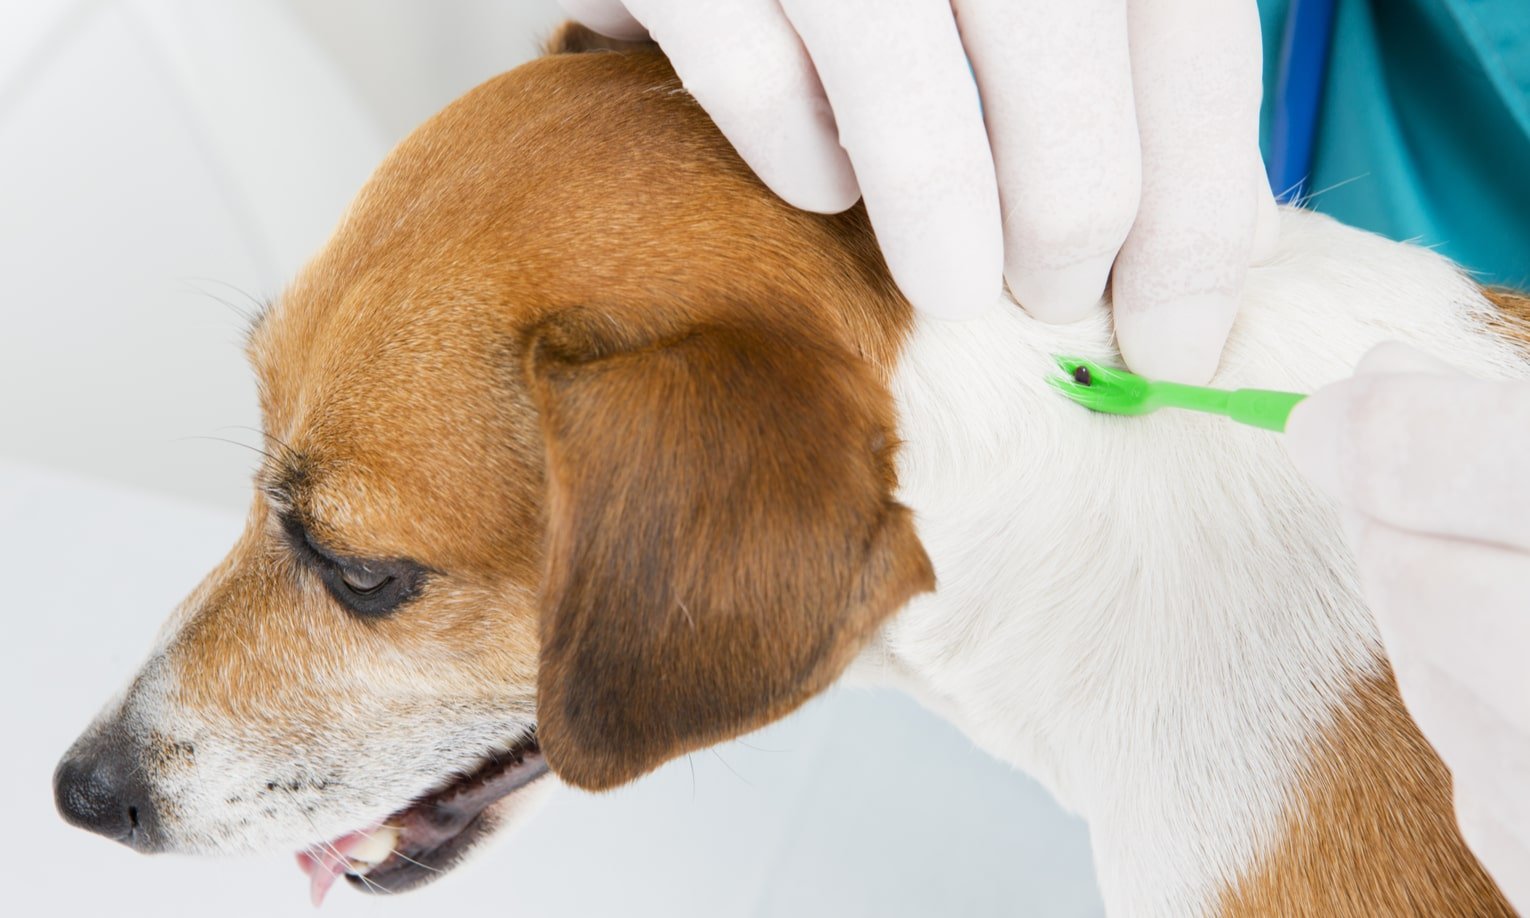 ветеринар вытаскивает клещ из кожи собаки